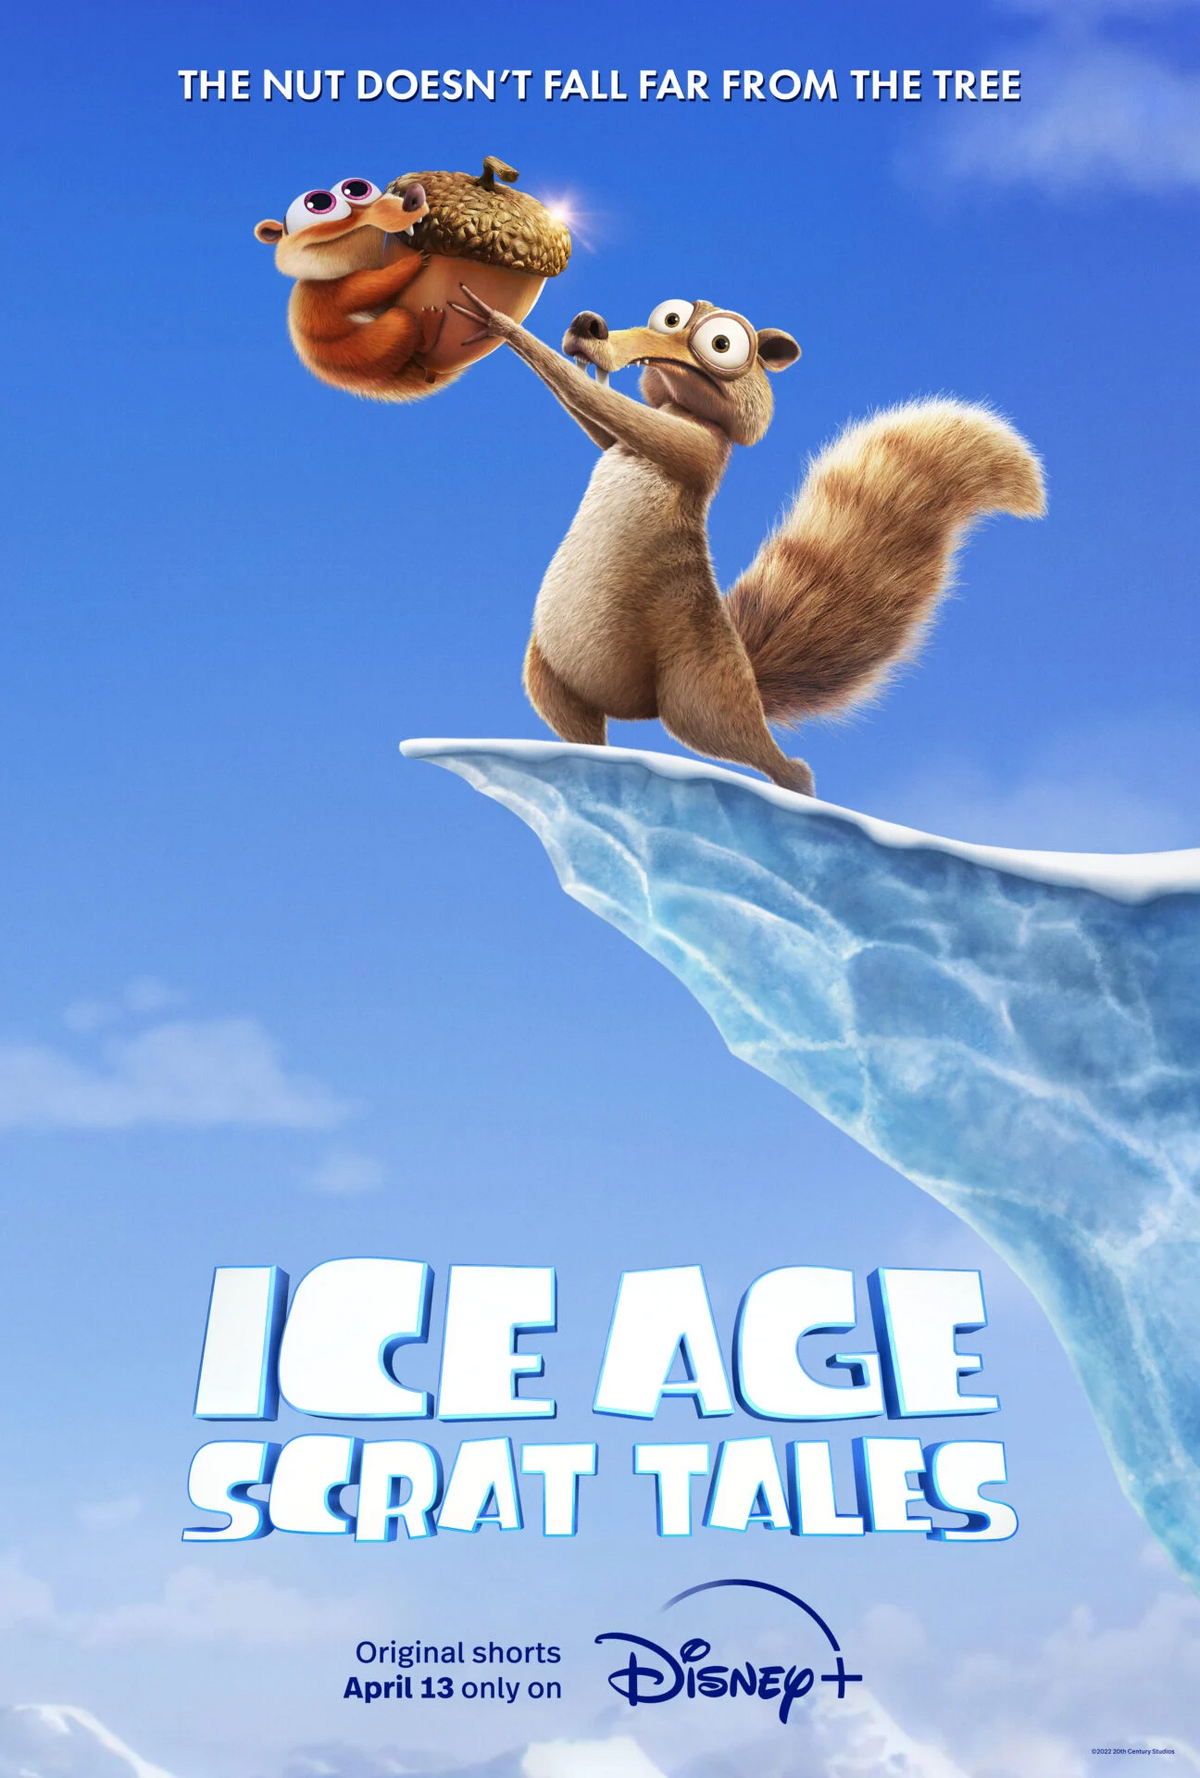 Cop (United States) vs Scrat (Ice Age)